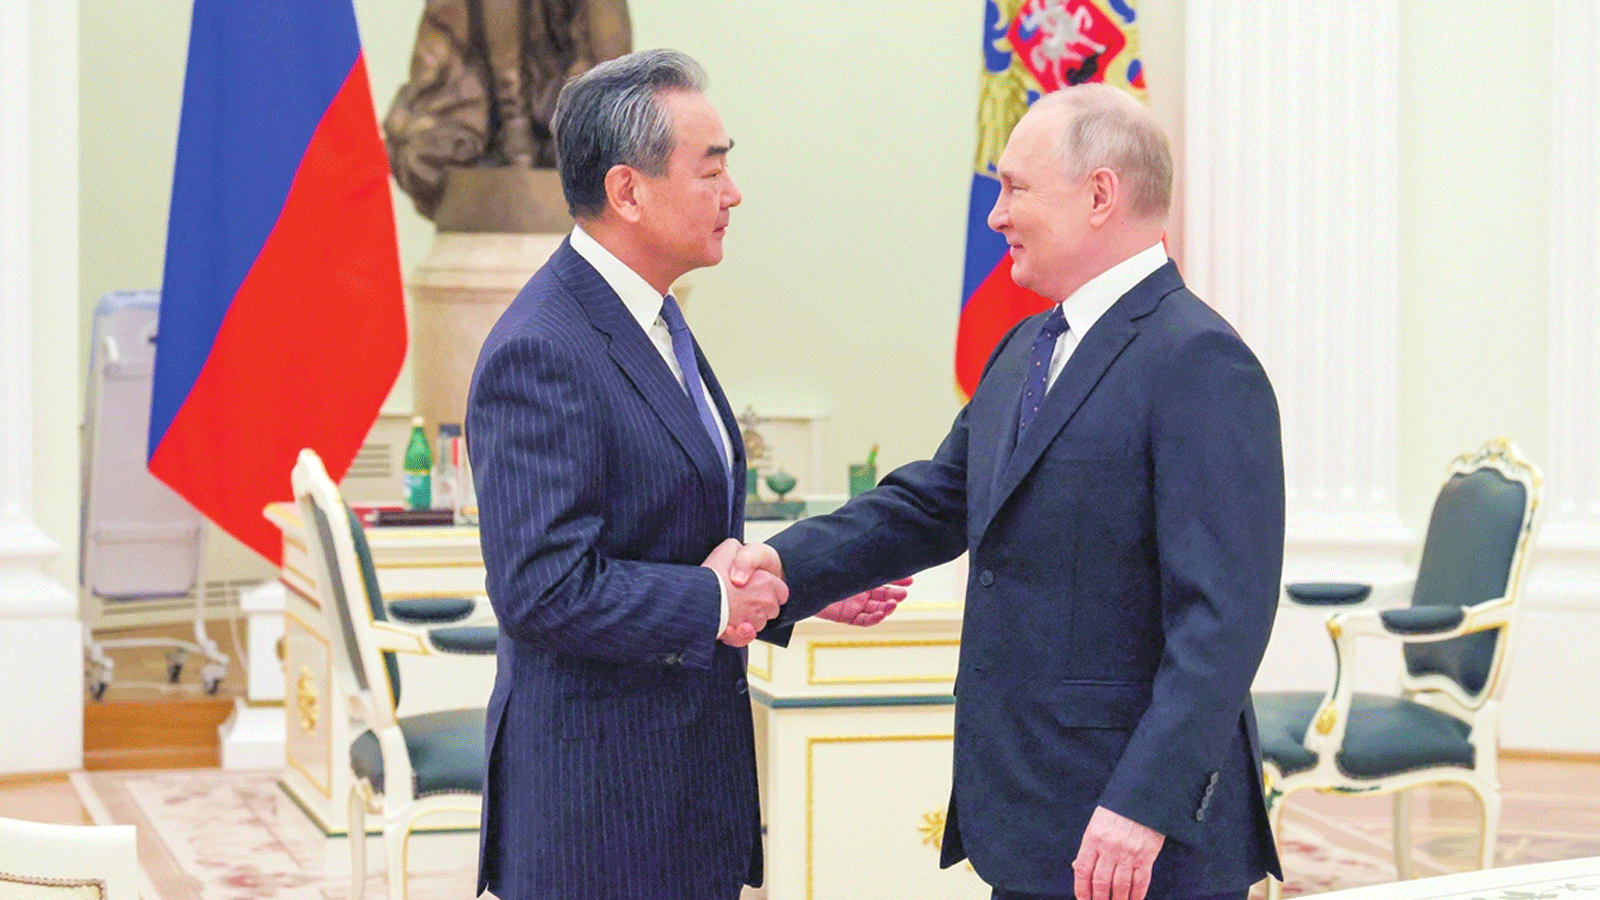 الرئيس الروسي فلاديمير بوتين يصافح رئيس لجنة الشؤون الخارجية الصينية وانغ يي